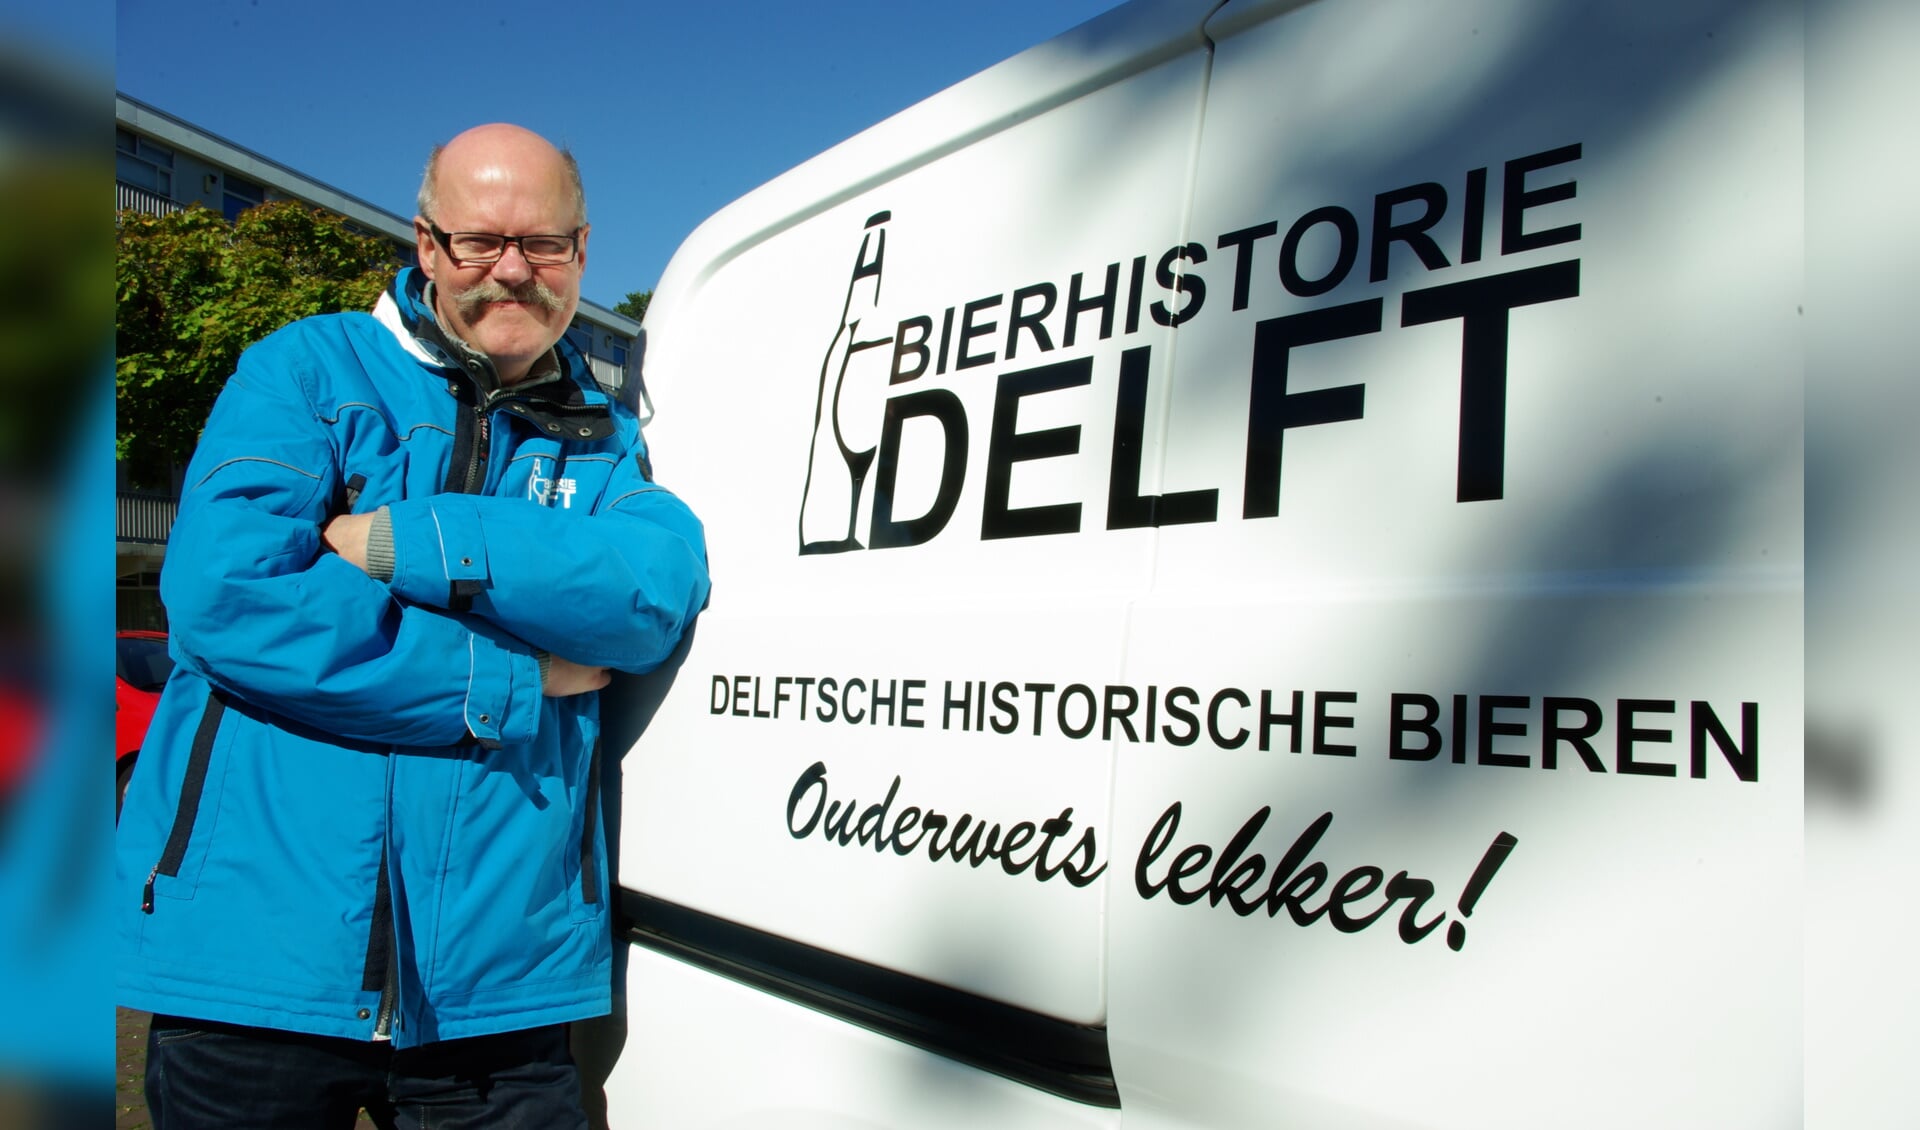 Aad van der Hoeven van Bierhistorie Delft is door lezers van de krant Delft op Zondag verkozen tot de Bekendste Delftenaar 2016. 